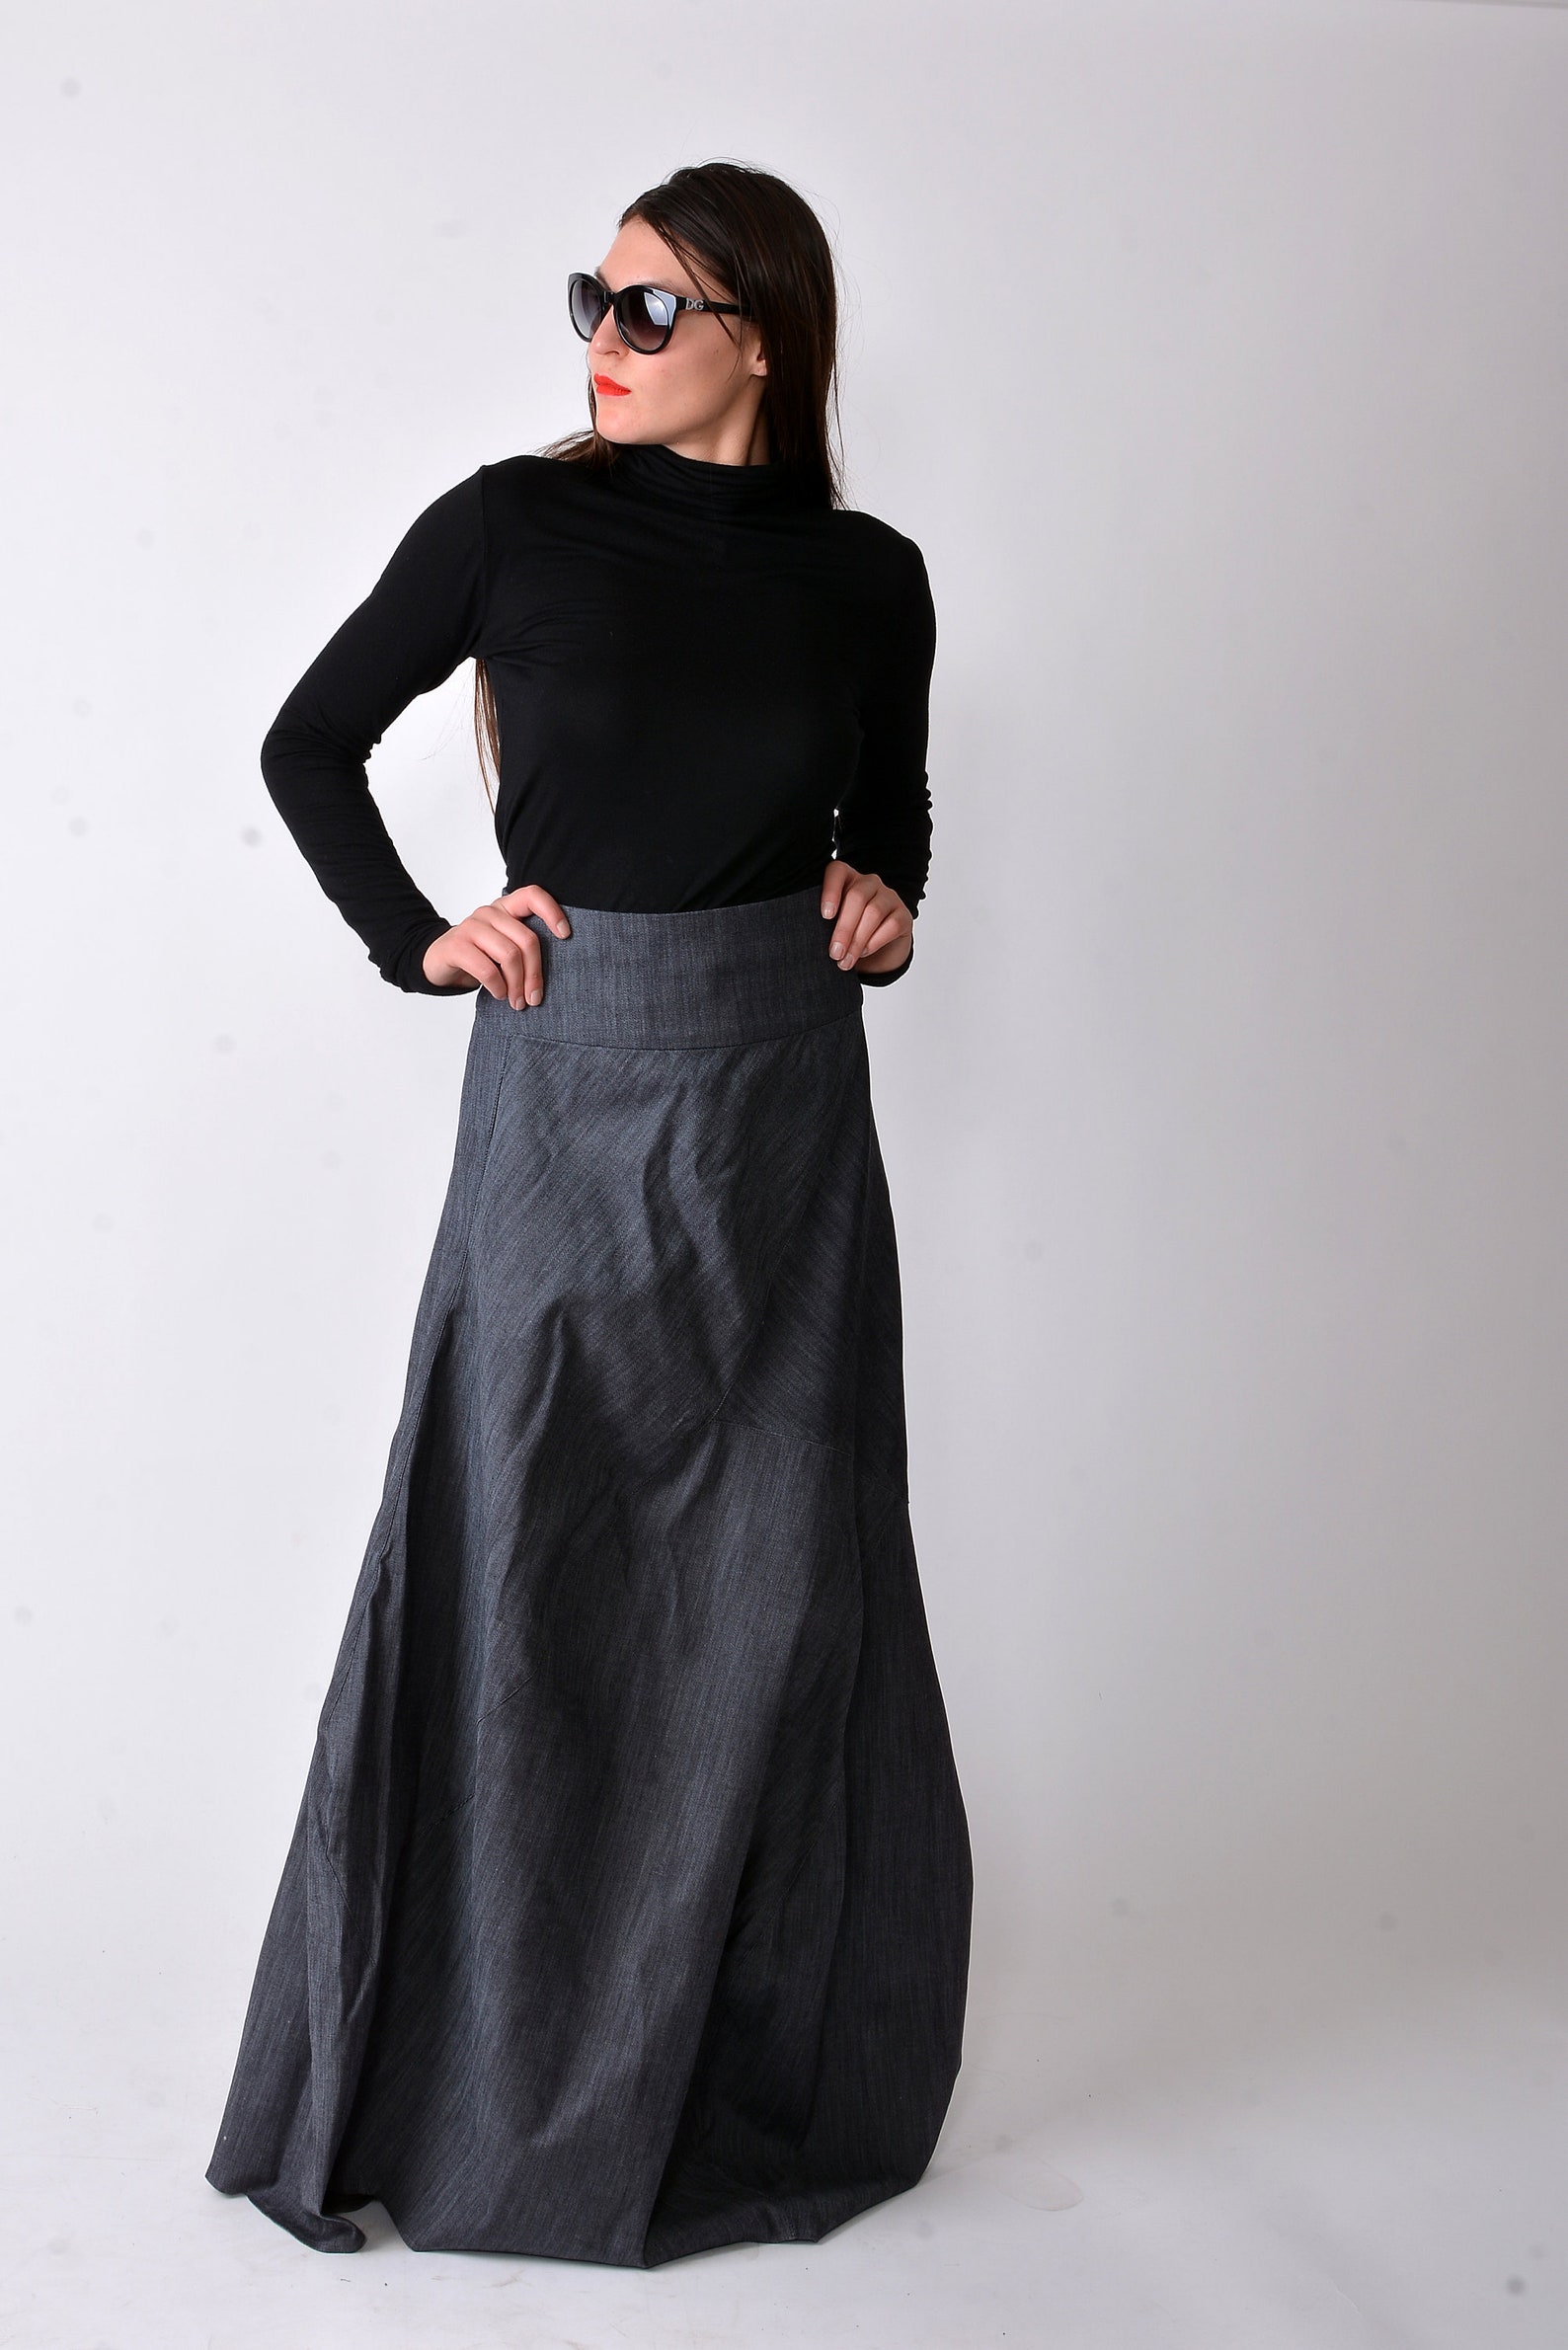 Denim Skirt/denim Dress/asymmetrical Jean Skirt/casual - Etsy